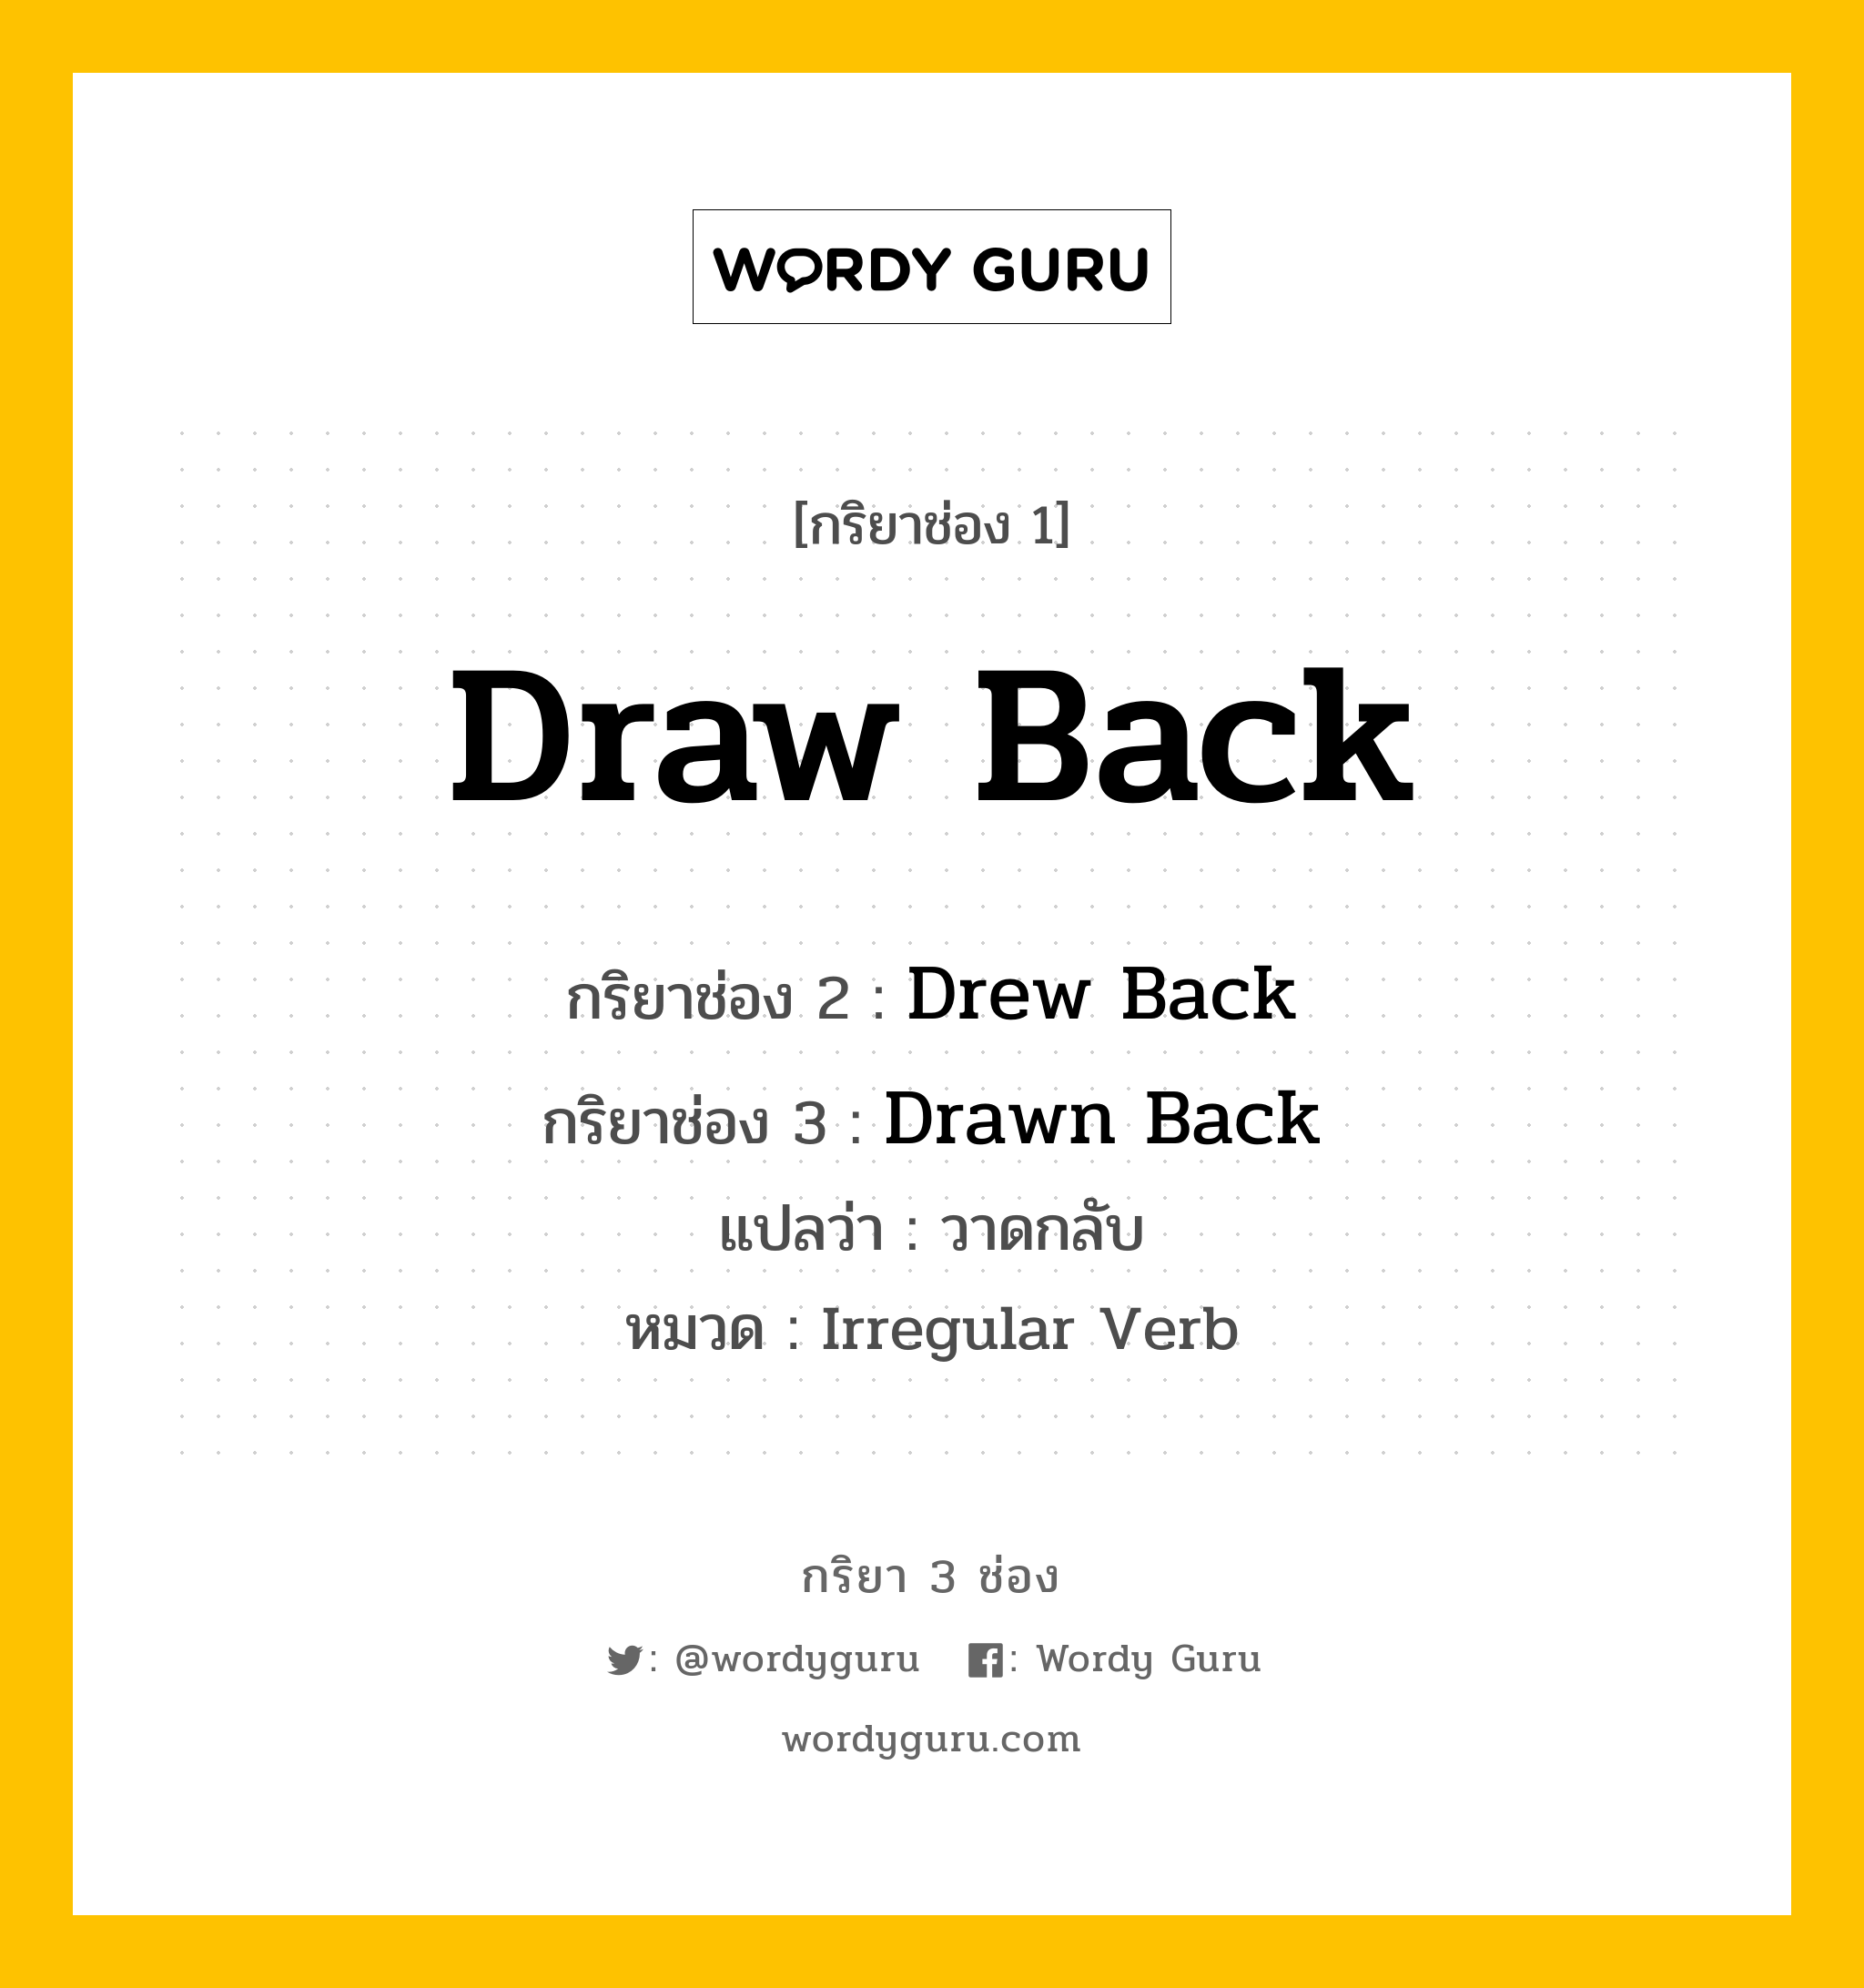 Draw Back มีกริยา 3 ช่องอะไรบ้าง? คำศัพท์ในกลุ่มประเภท Irregular Verb, กริยาช่อง 1 Draw Back กริยาช่อง 2 Drew Back กริยาช่อง 3 Drawn Back แปลว่า วาดกลับ หมวด Irregular Verb หมวด Irregular Verb